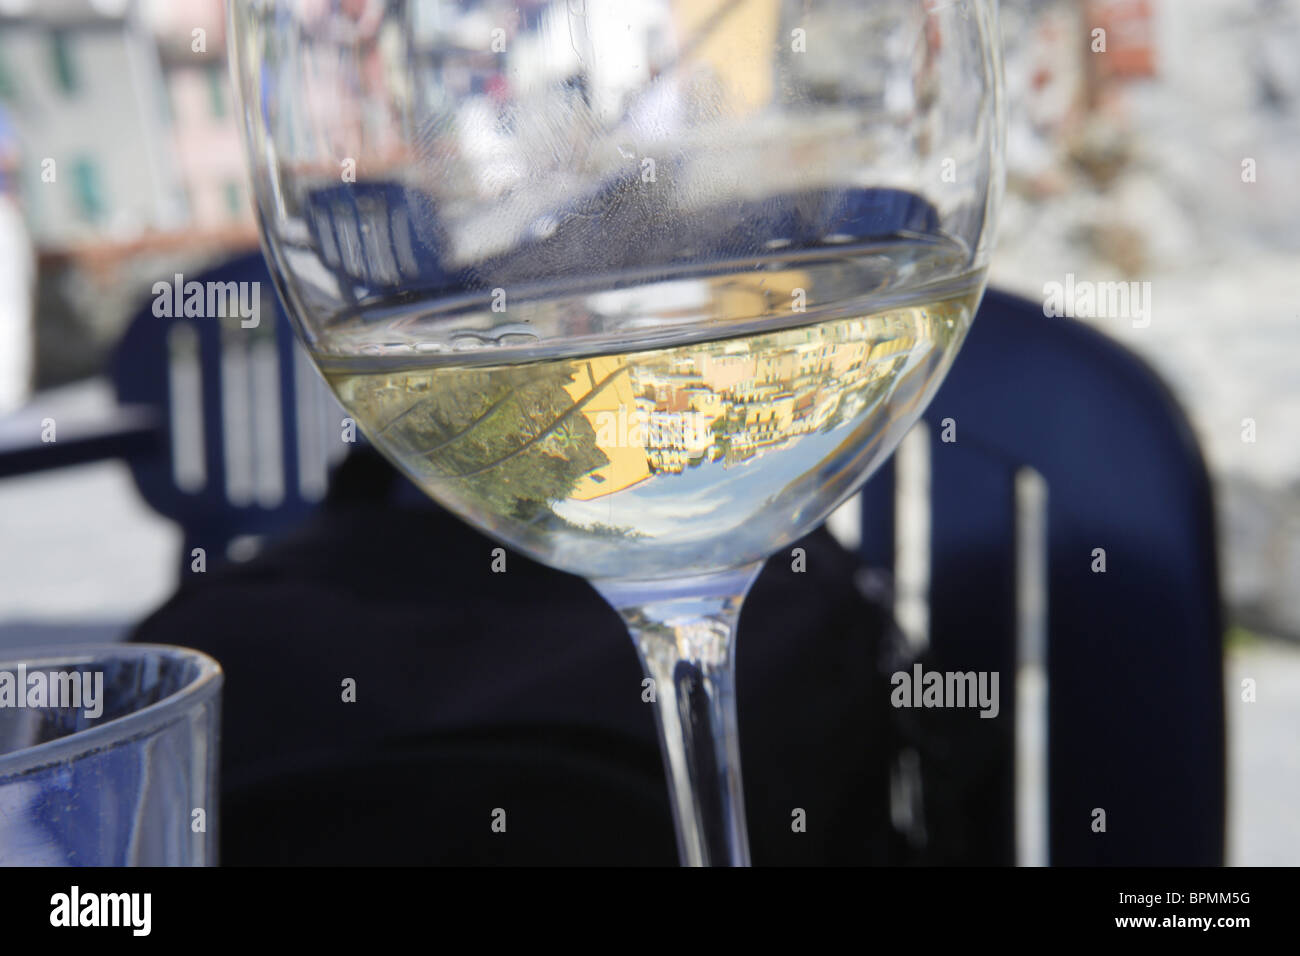 Reflection in a glass of white wine, Riomaggiore, Cinque terre, Liguria, Italy Stock Photo